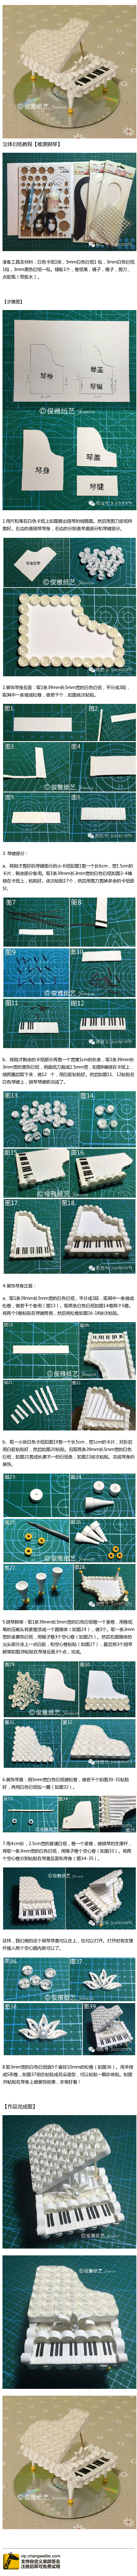 立体衍纸钢琴教程